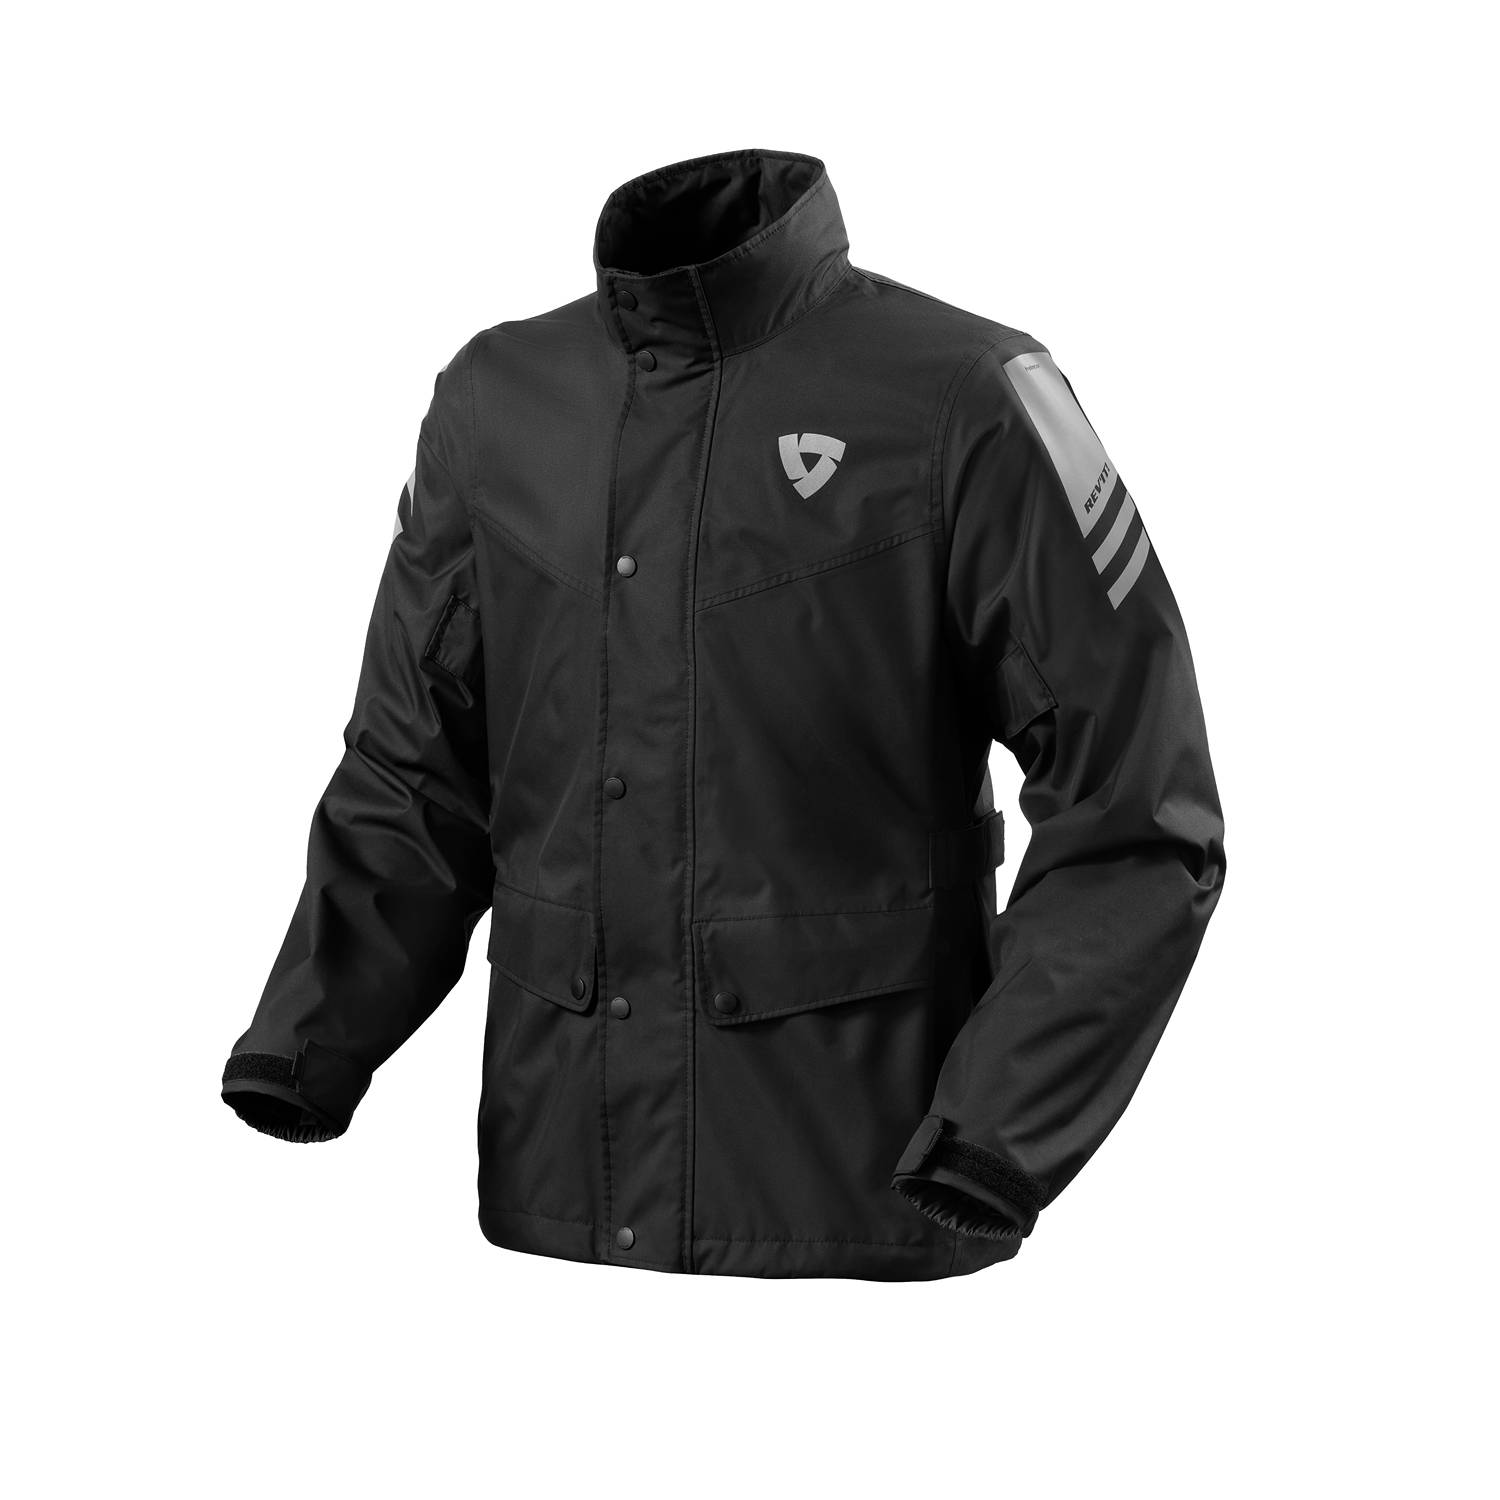 Image of REV'IT! Nitric 4 H2O Rain Jacket Black Size 3XL EN